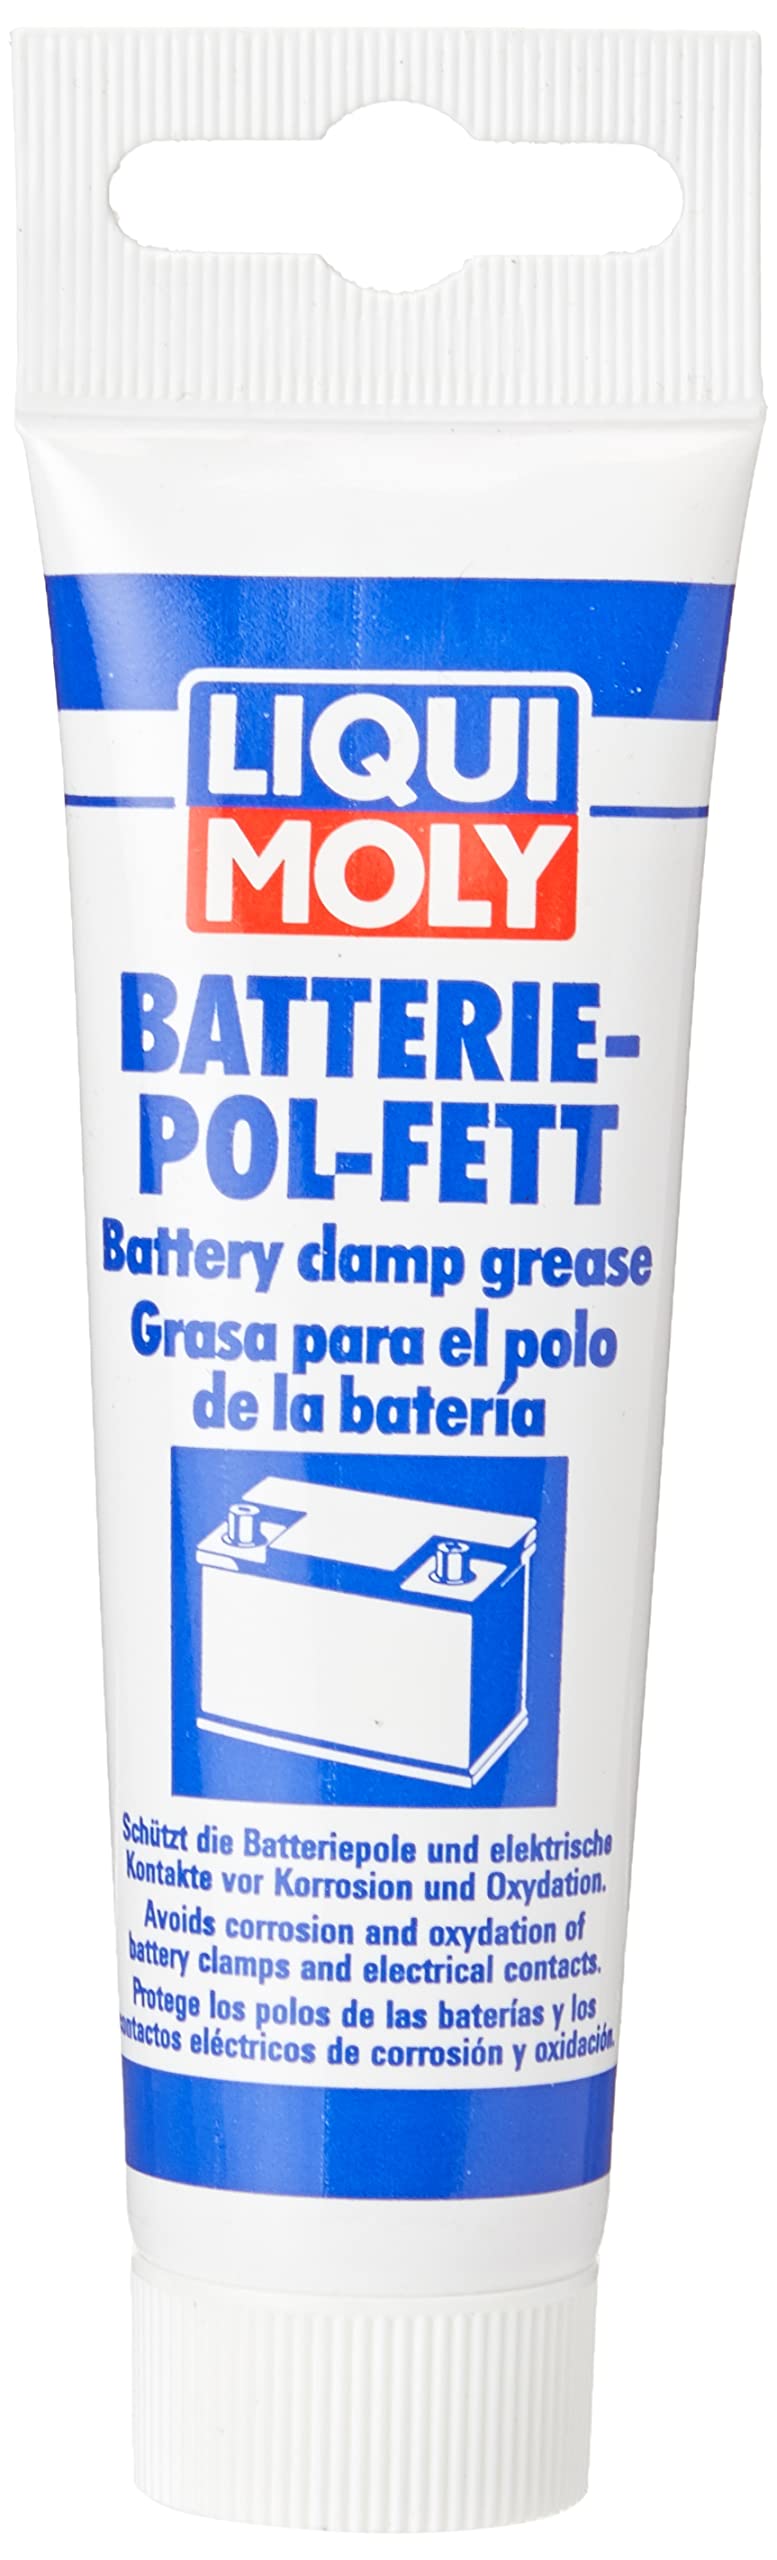 LIQUI MOLY Batterie-Pol-Fett | 50 g | Calcium Fett | Schmierfett | Art.-Nr.: 3140 von Liqui Moly